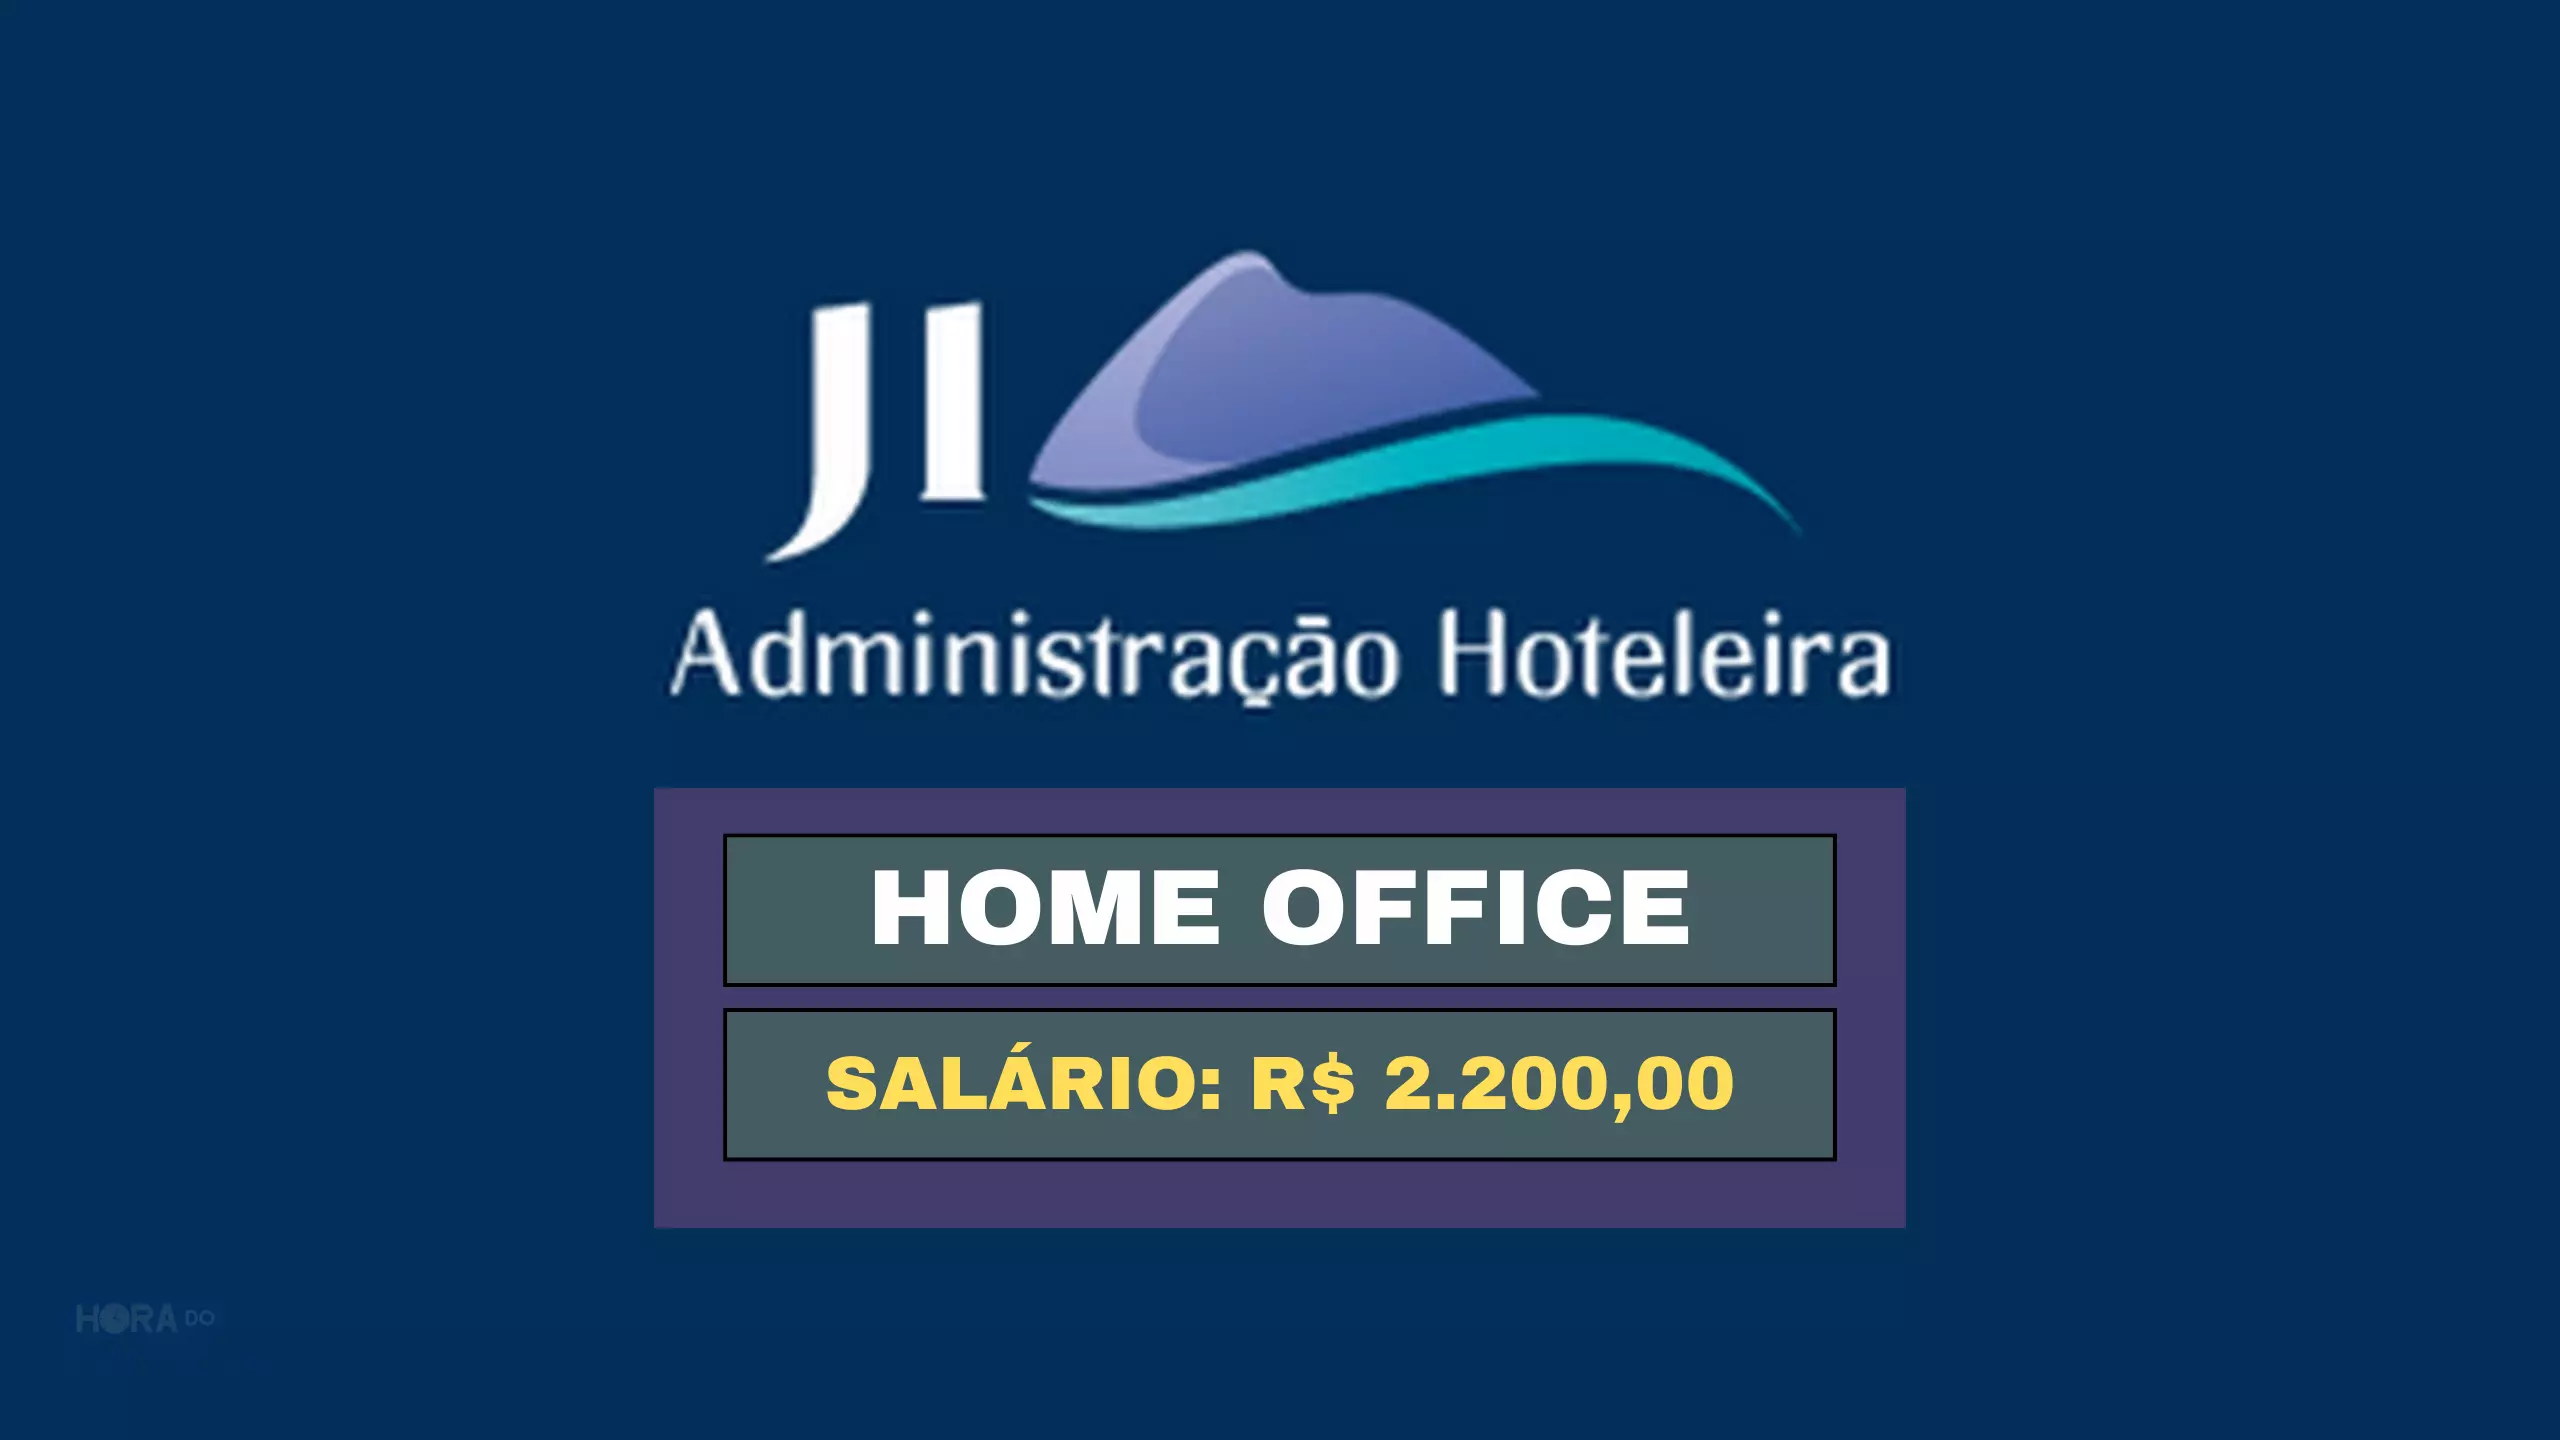 JI Administração Hoteleira abre vaga HOME OFFICE para Assistente de Reservas com salário de R$ 2.200,00